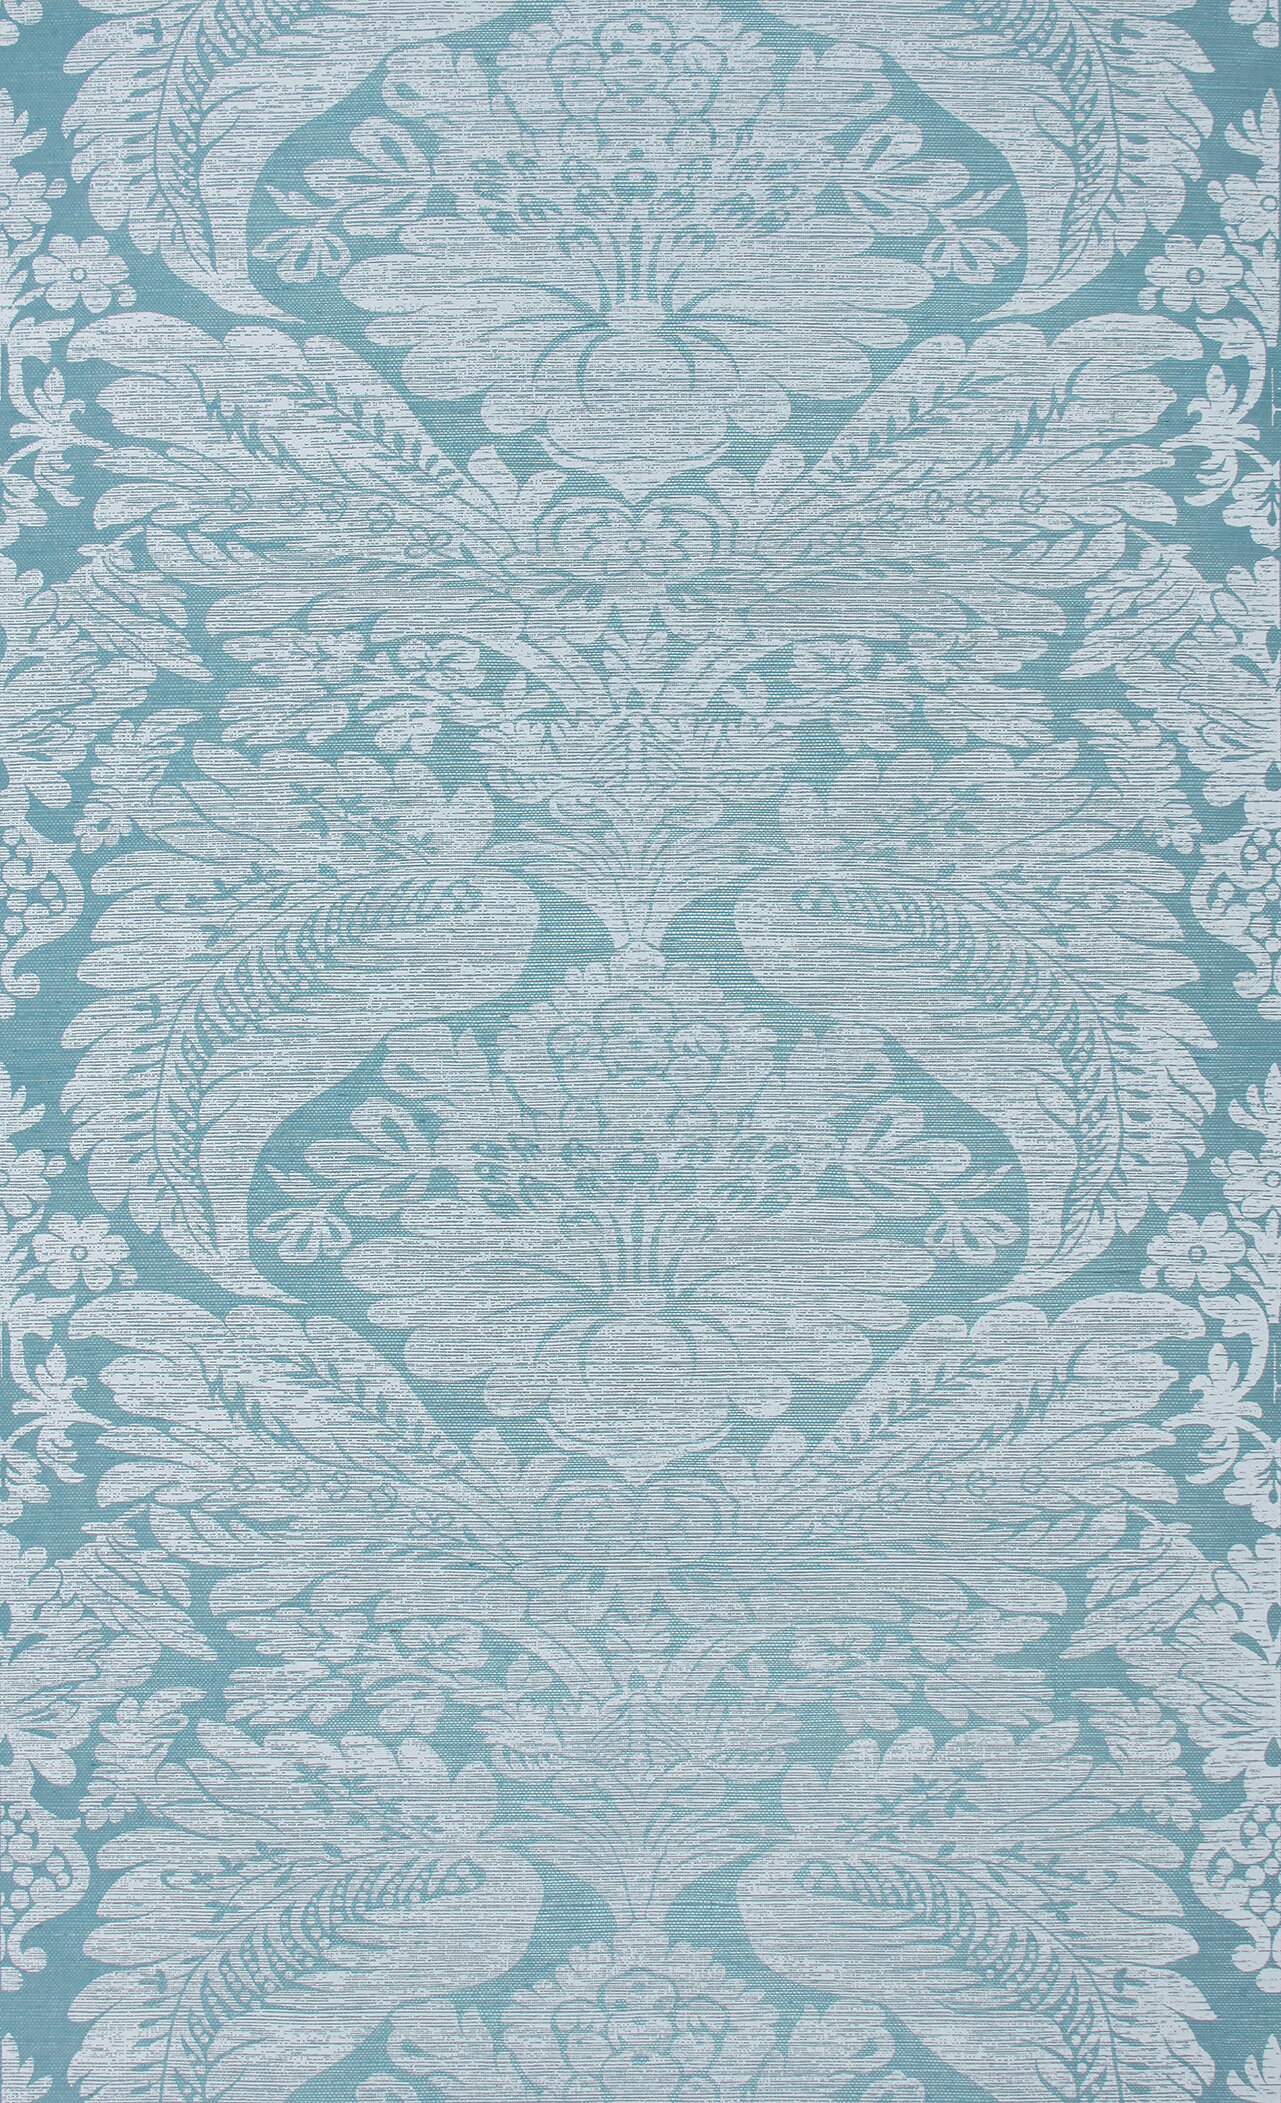 LR-Meg-Braff-Designs-Wallpaper-Venise-White-on-Aqua-Grasscloth.jpg